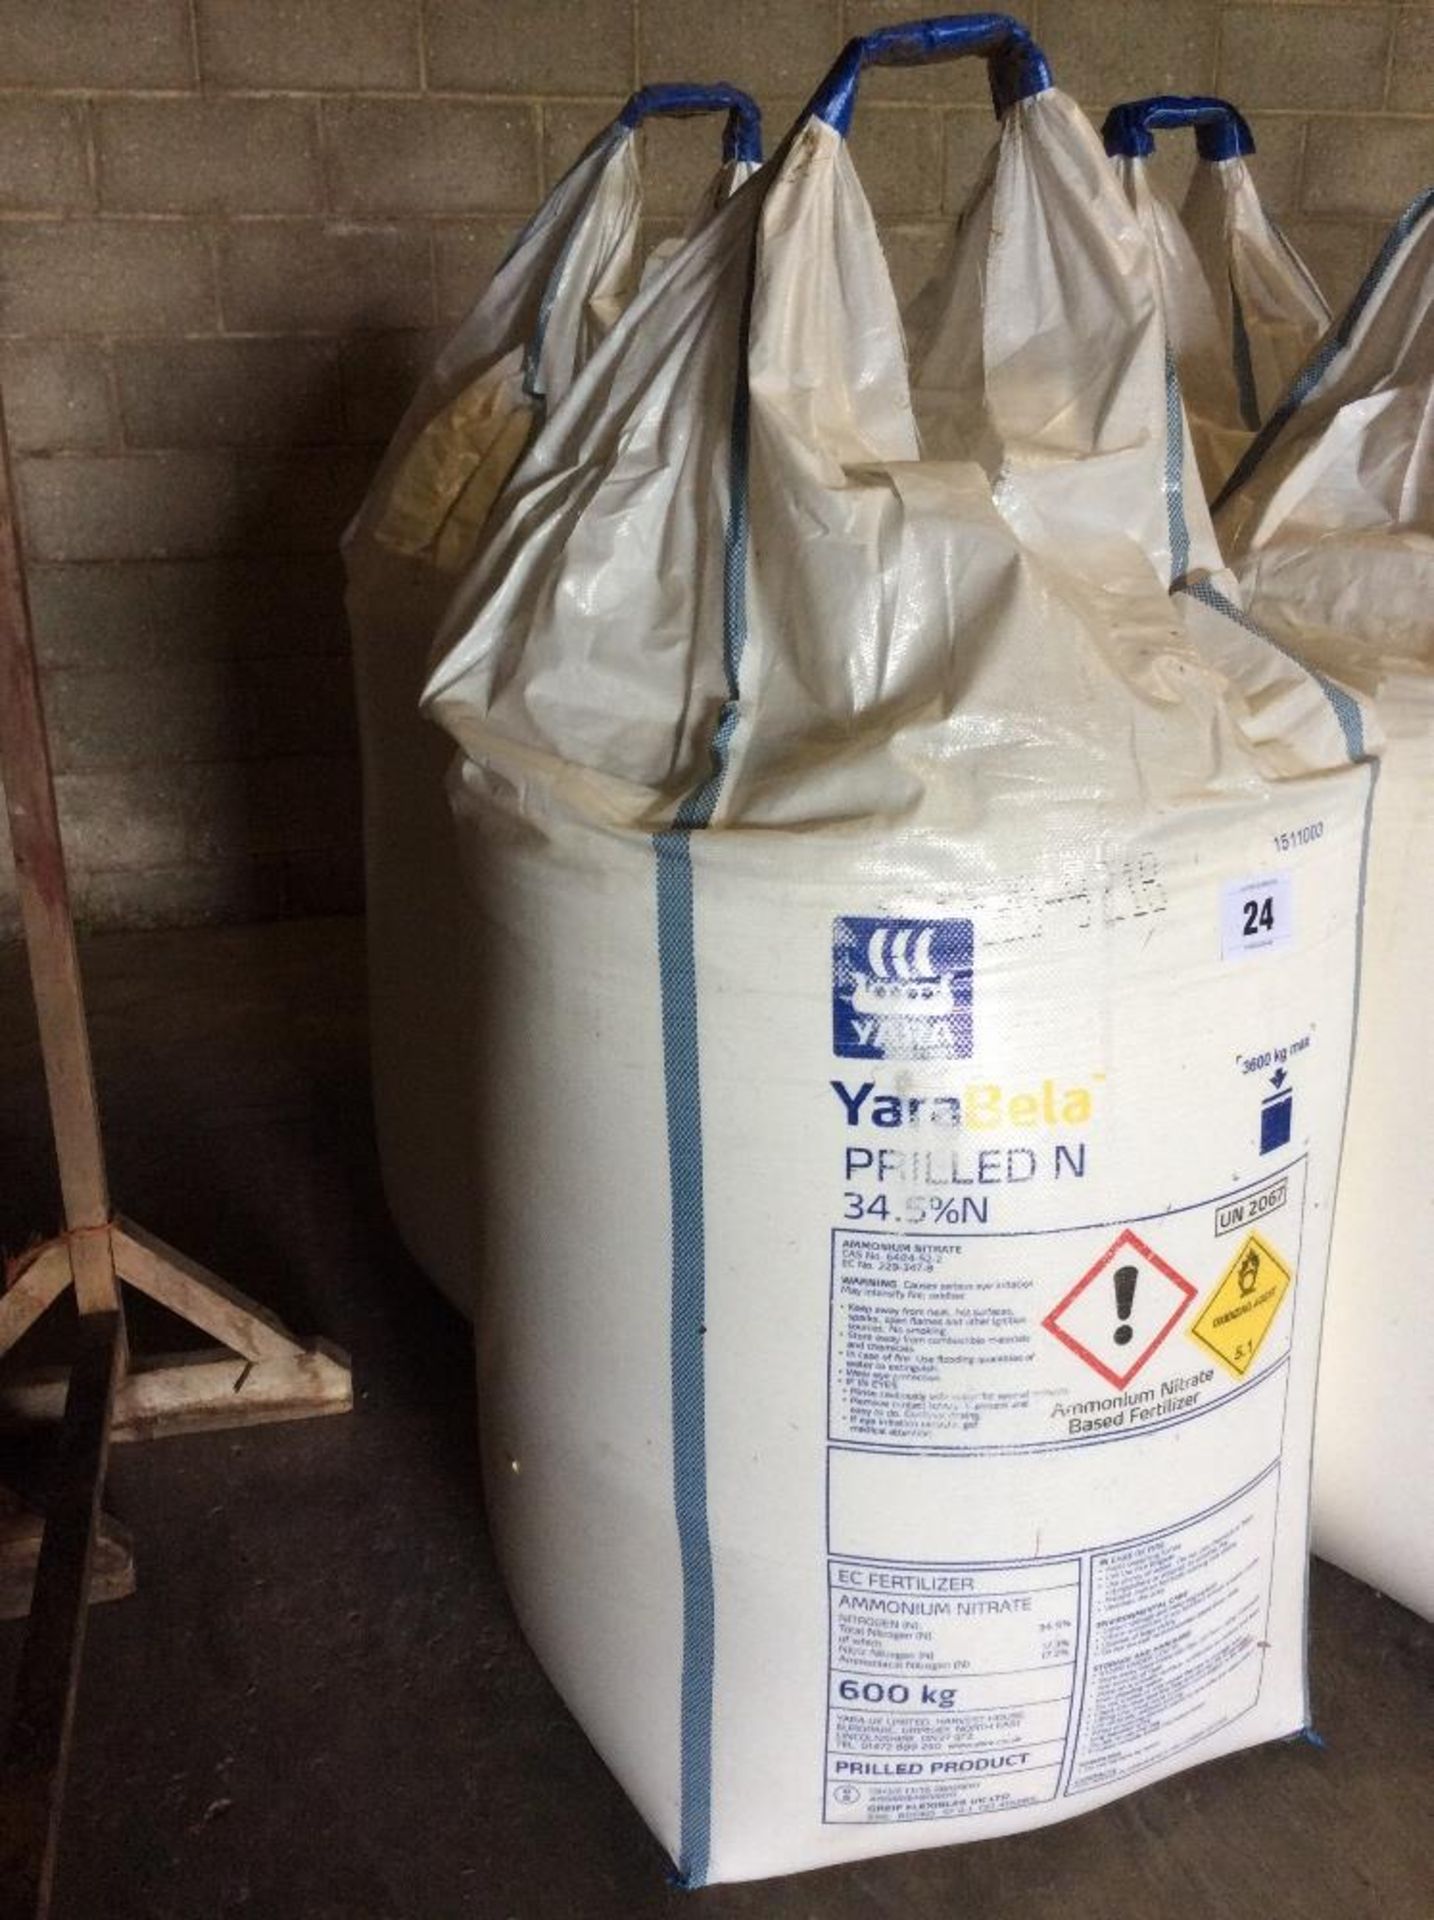 2 x 600kg bags of 34.5% prilled nitrogen.